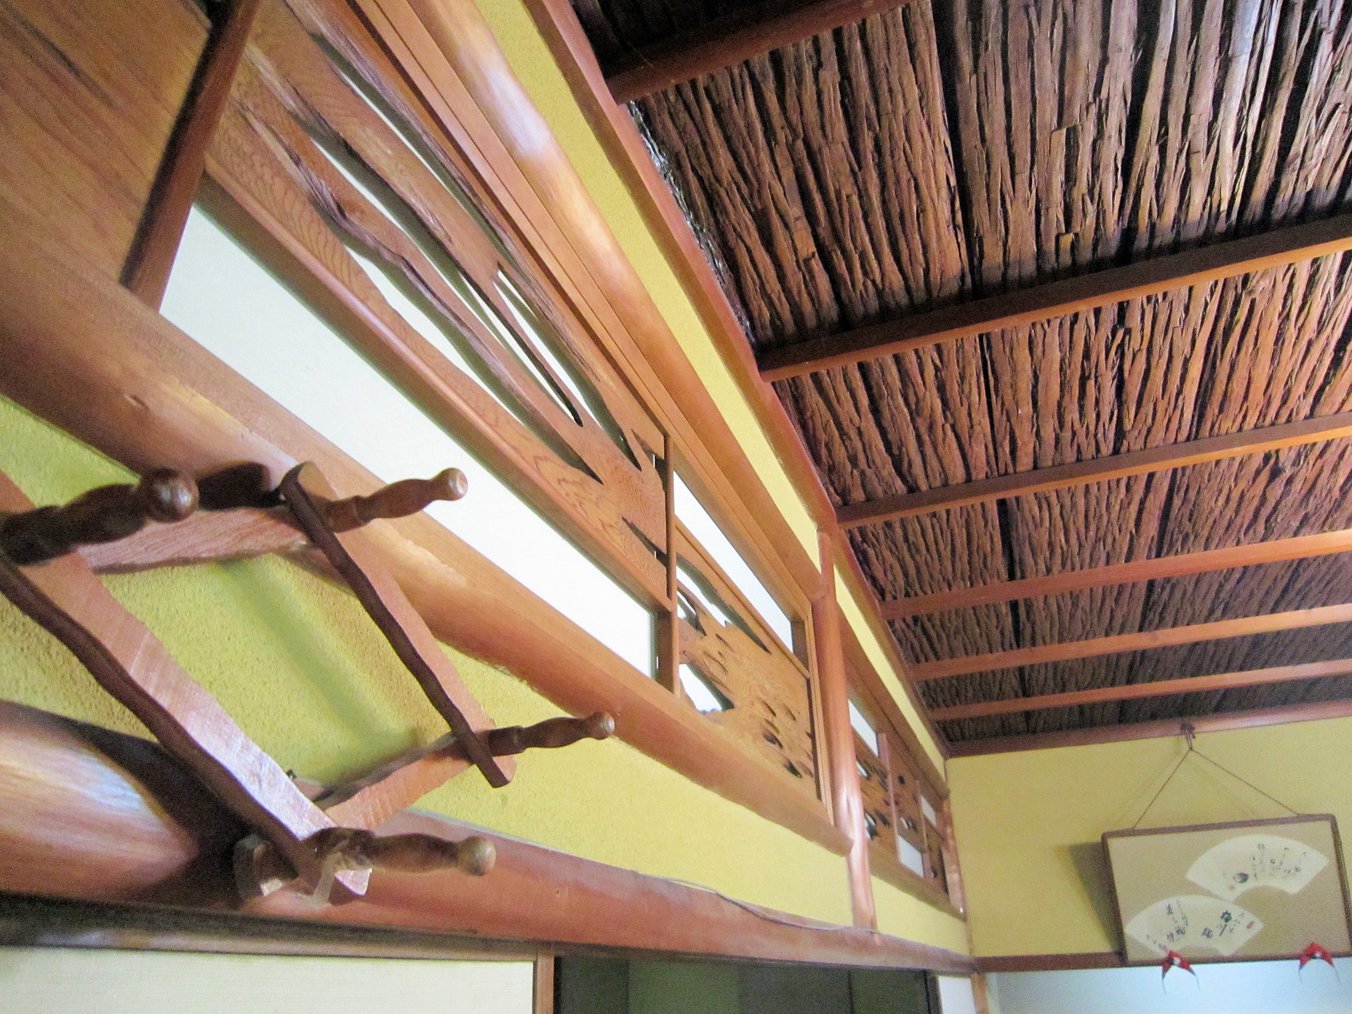 客室吉野タイプの杉板天井